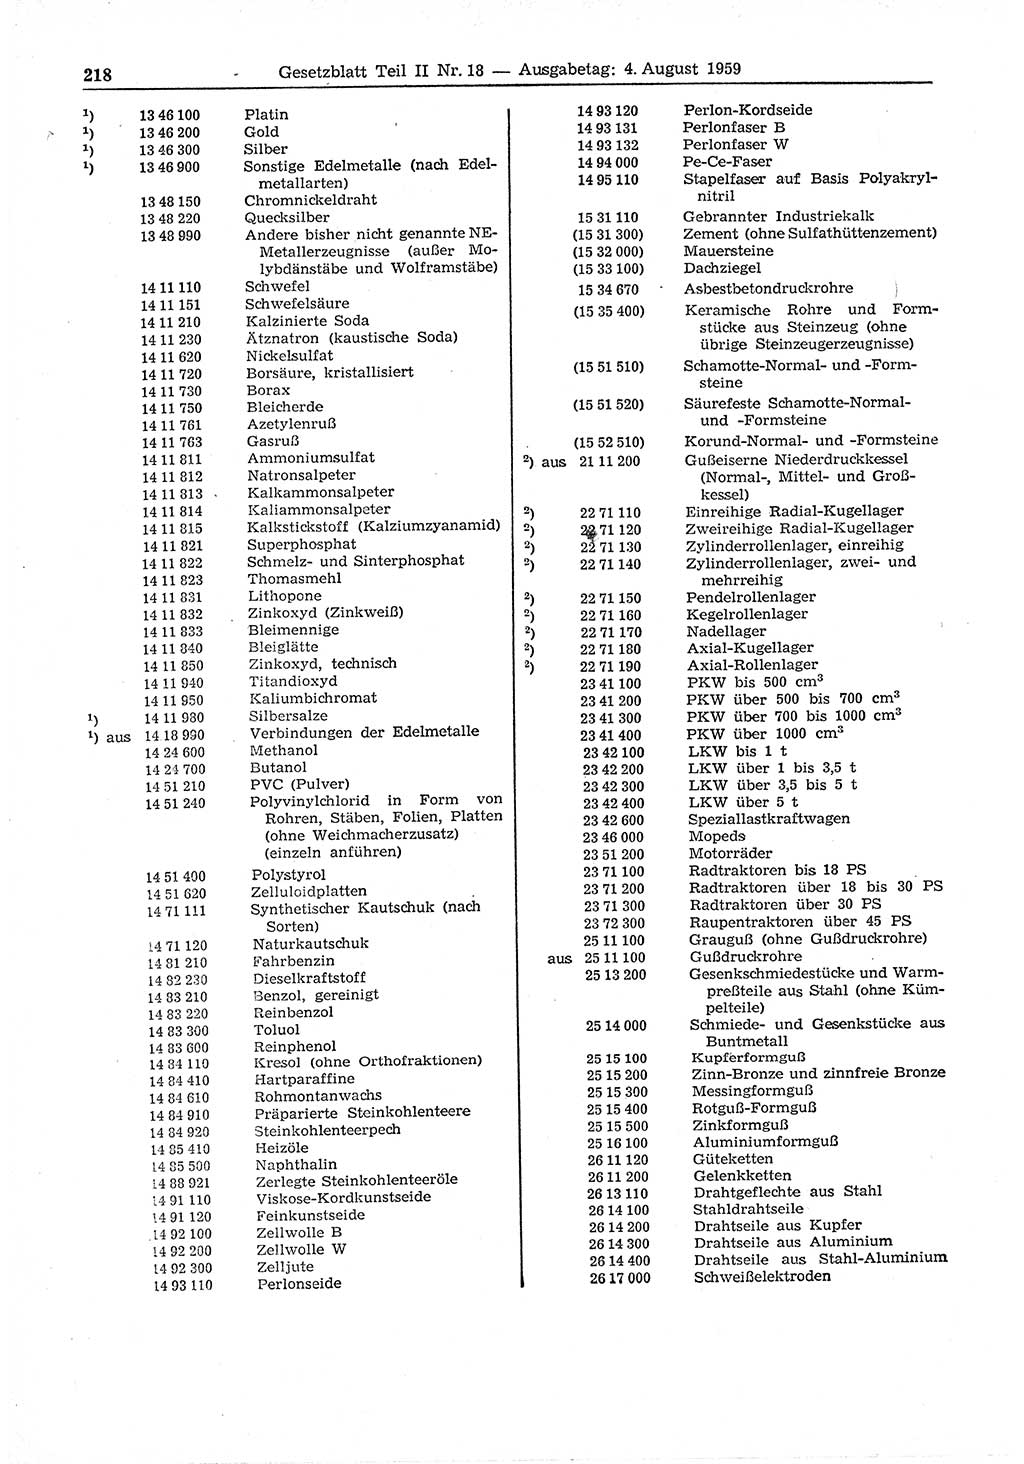 Gesetzblatt (GBl.) der Deutschen Demokratischen Republik (DDR) Teil ⅠⅠ 1959, Seite 218 (GBl. DDR ⅠⅠ 1959, S. 218)